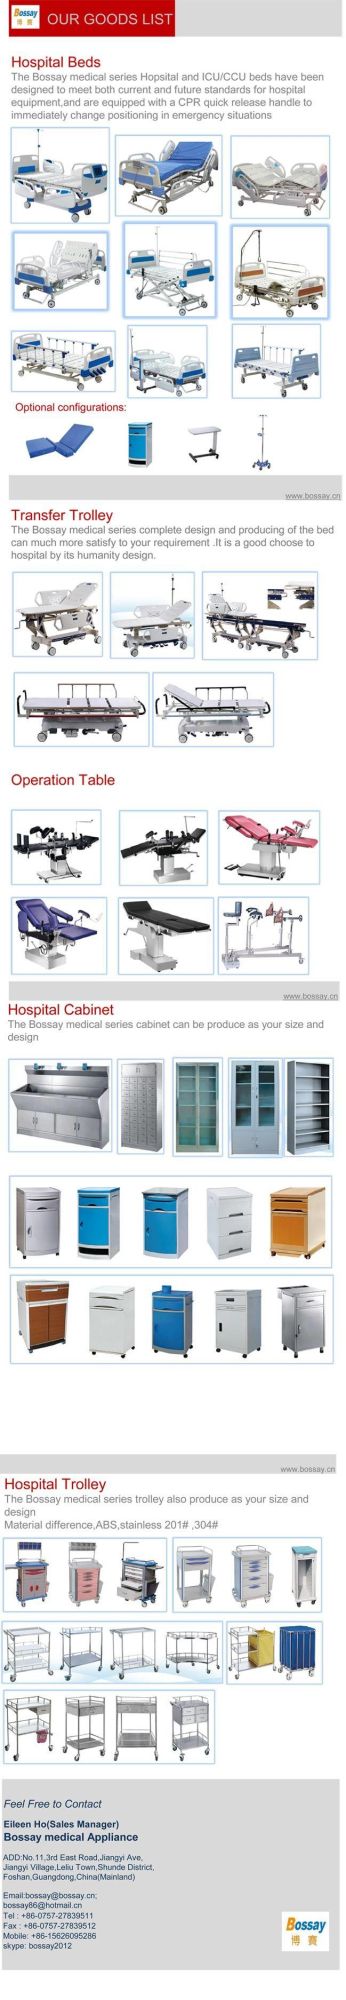 2017 Hot Sale Hospital Equipment